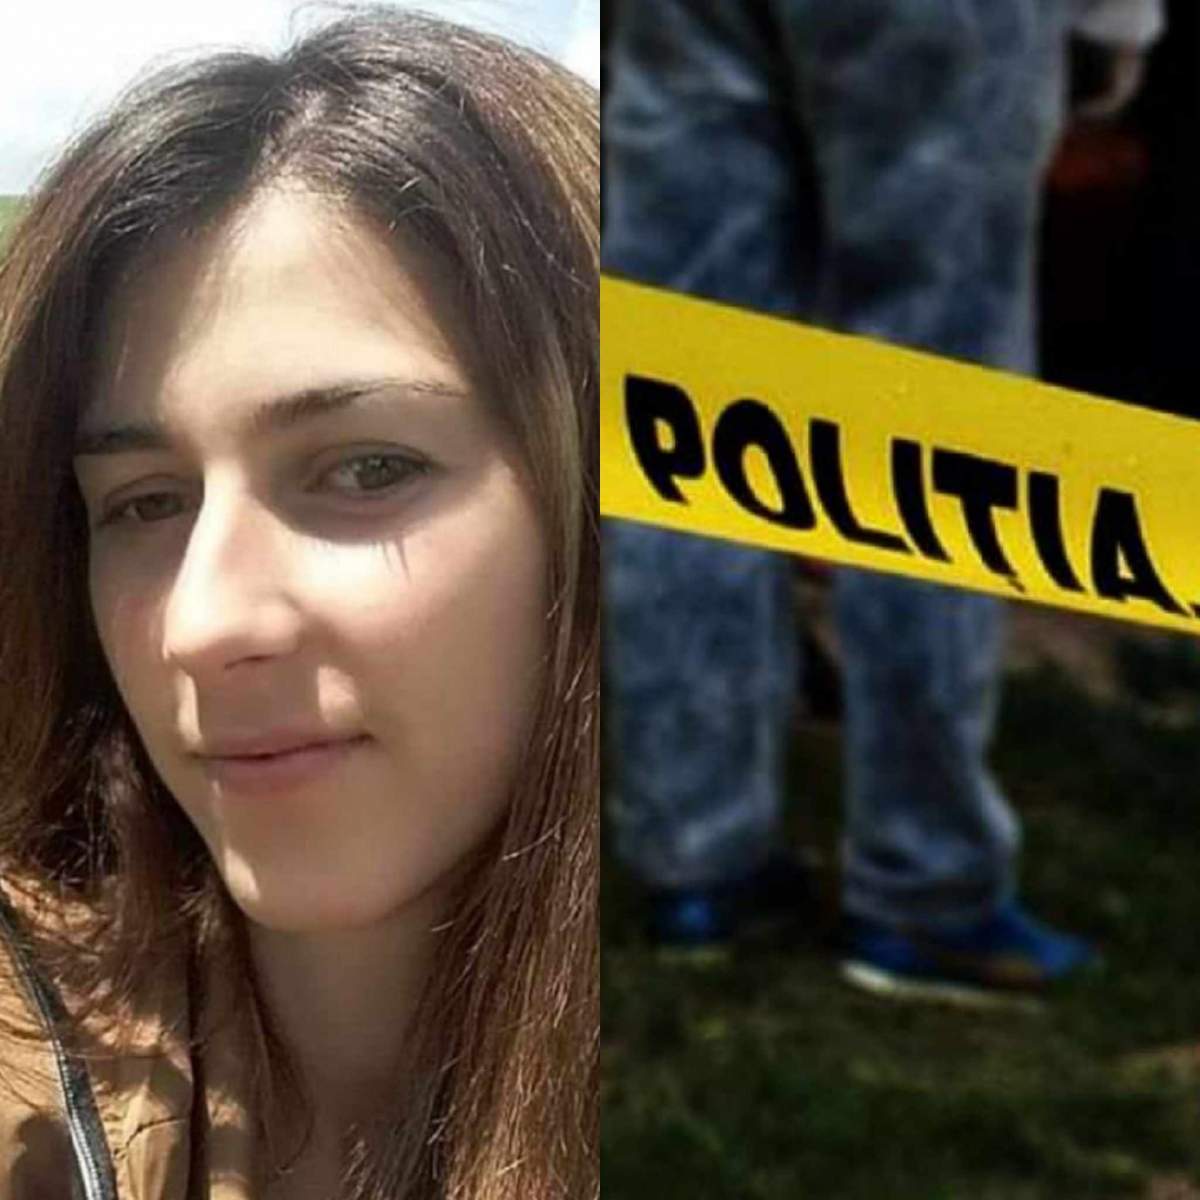 Colaj foto cu Ionelia, femeia din Vrancea care a fost înjunghiată de soţul ei, și poliția